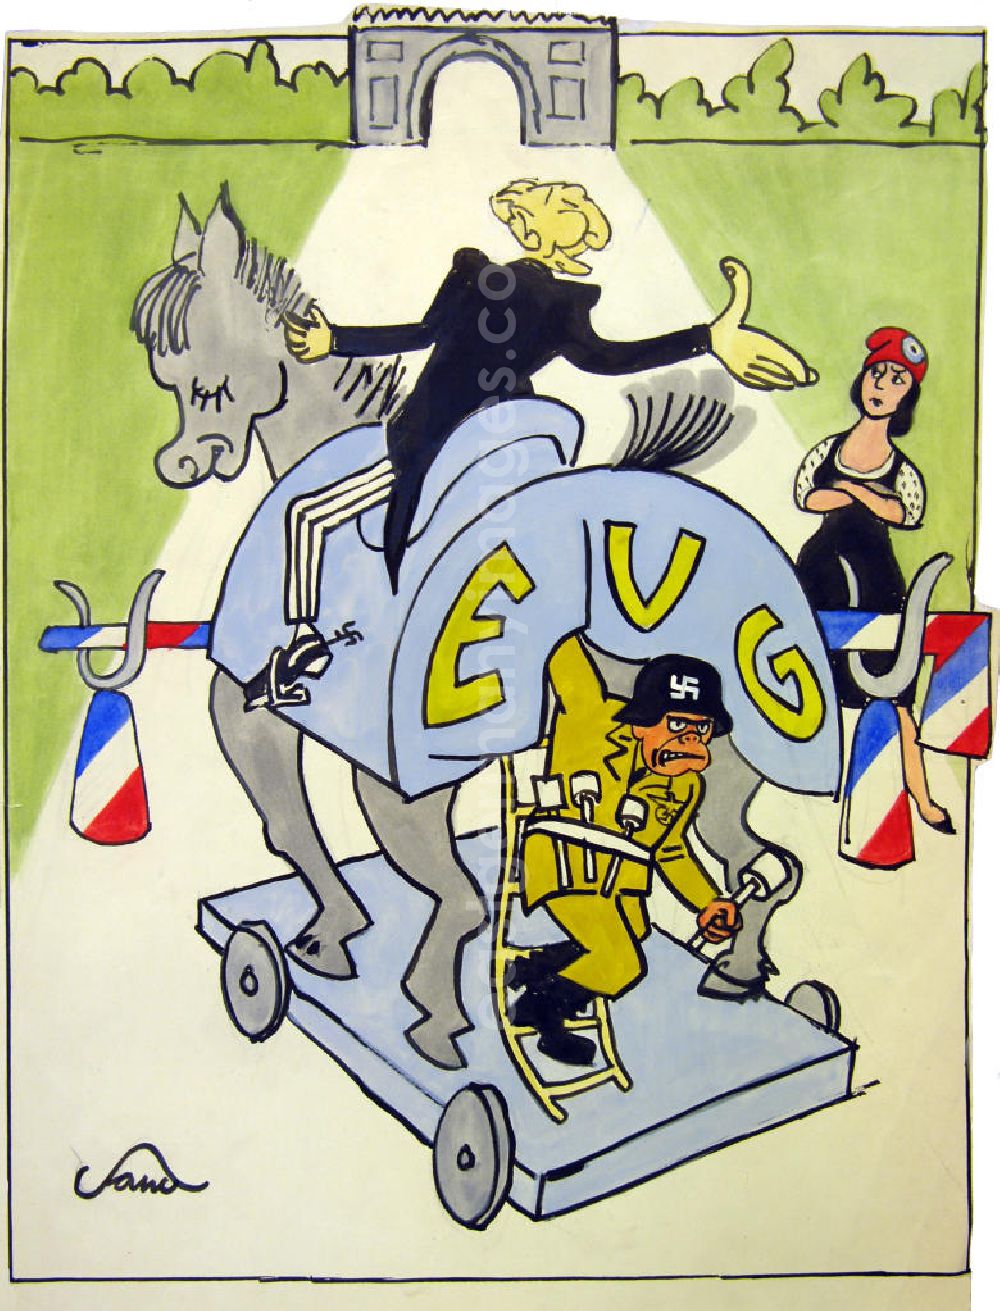 GDR photo archive: Berlin - Zeichnung von Herbert Sandberg EVG, 38,2x47,7cm Pinsel und Stift, handsigniert. Konrad Adenauer auf einem Pferd (EVG, ähnlich dem Trojanischen Pferd), an seinem Schuh ein Hakenkreuz, aus dem hinteren Teil des Pferdes kommt ein Mann mit Stahlhelm (darauf ein Hakenkreuz) und in grüner Uniform, das Pferd steht vor einer Schranke in den Farben der französischen Flagge (blau, weiß, rot), Adenauer spricht mit einer Frau hinter der Schranke, sie hat die Arme verschränkt und trägt eine rote Zipfelmütze; im Hintergrund: Triumphbogen.